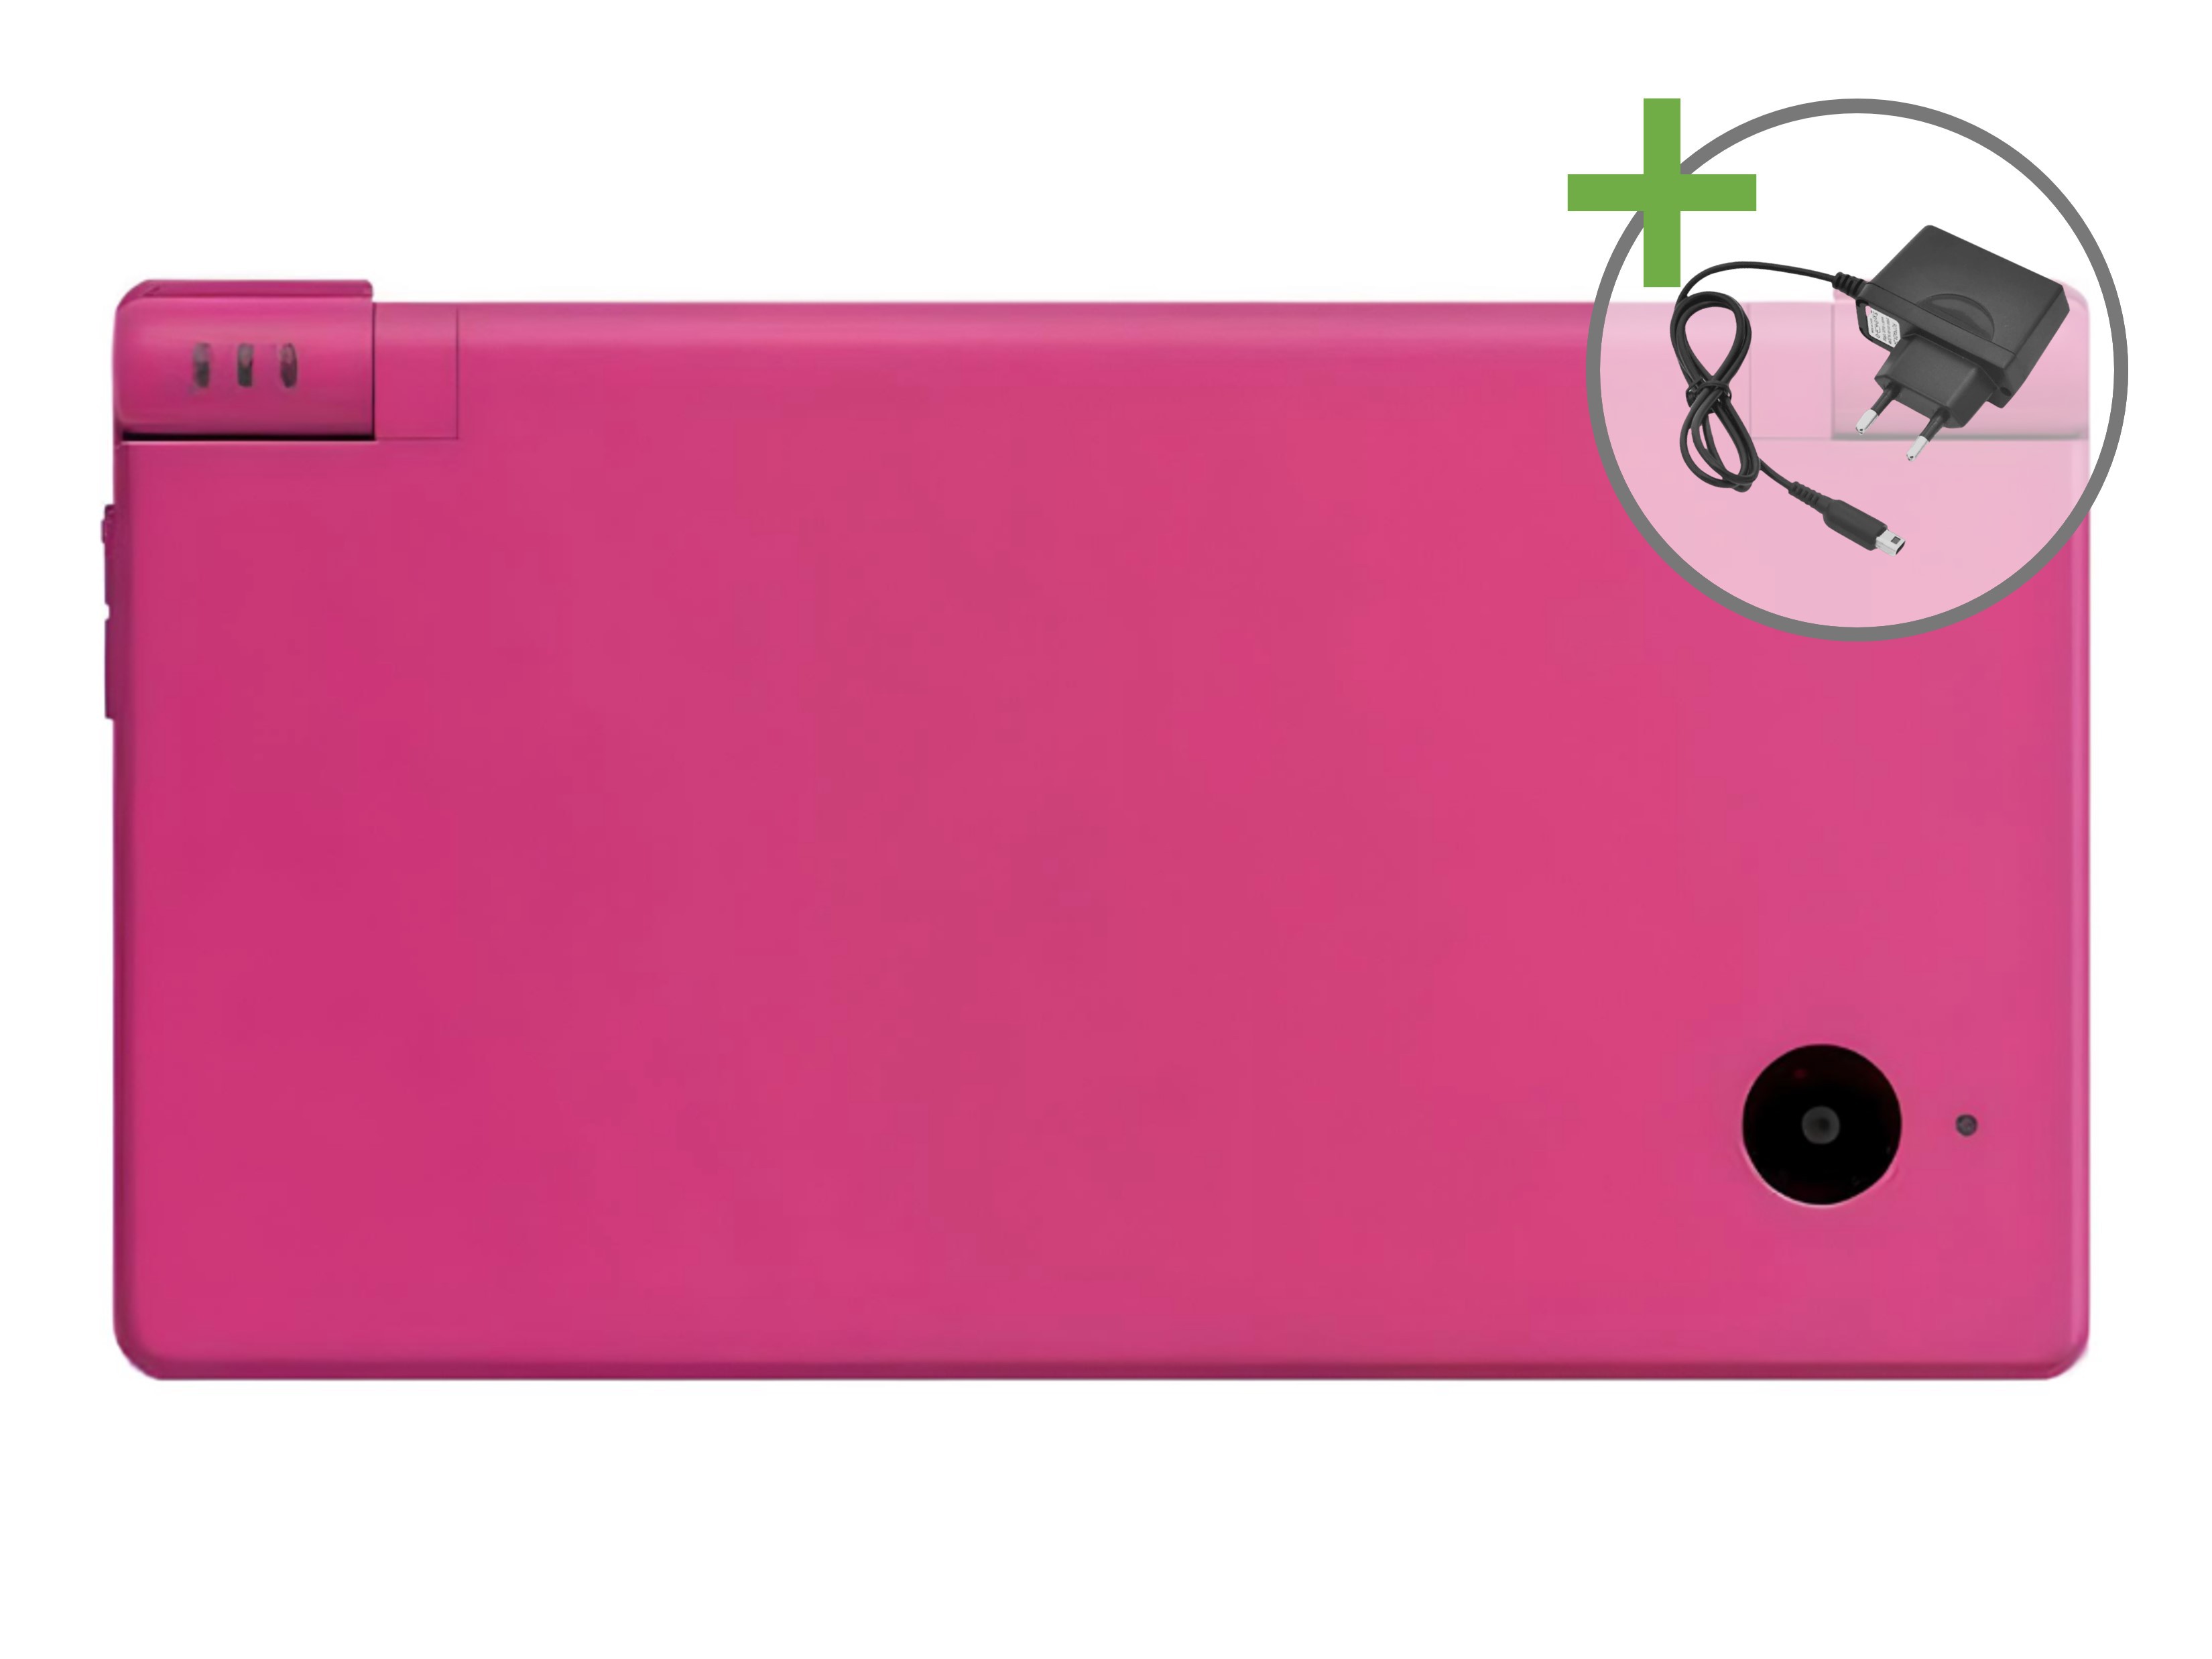 Nintendo DSi - Pink - Nintendo DS Hardware - 2